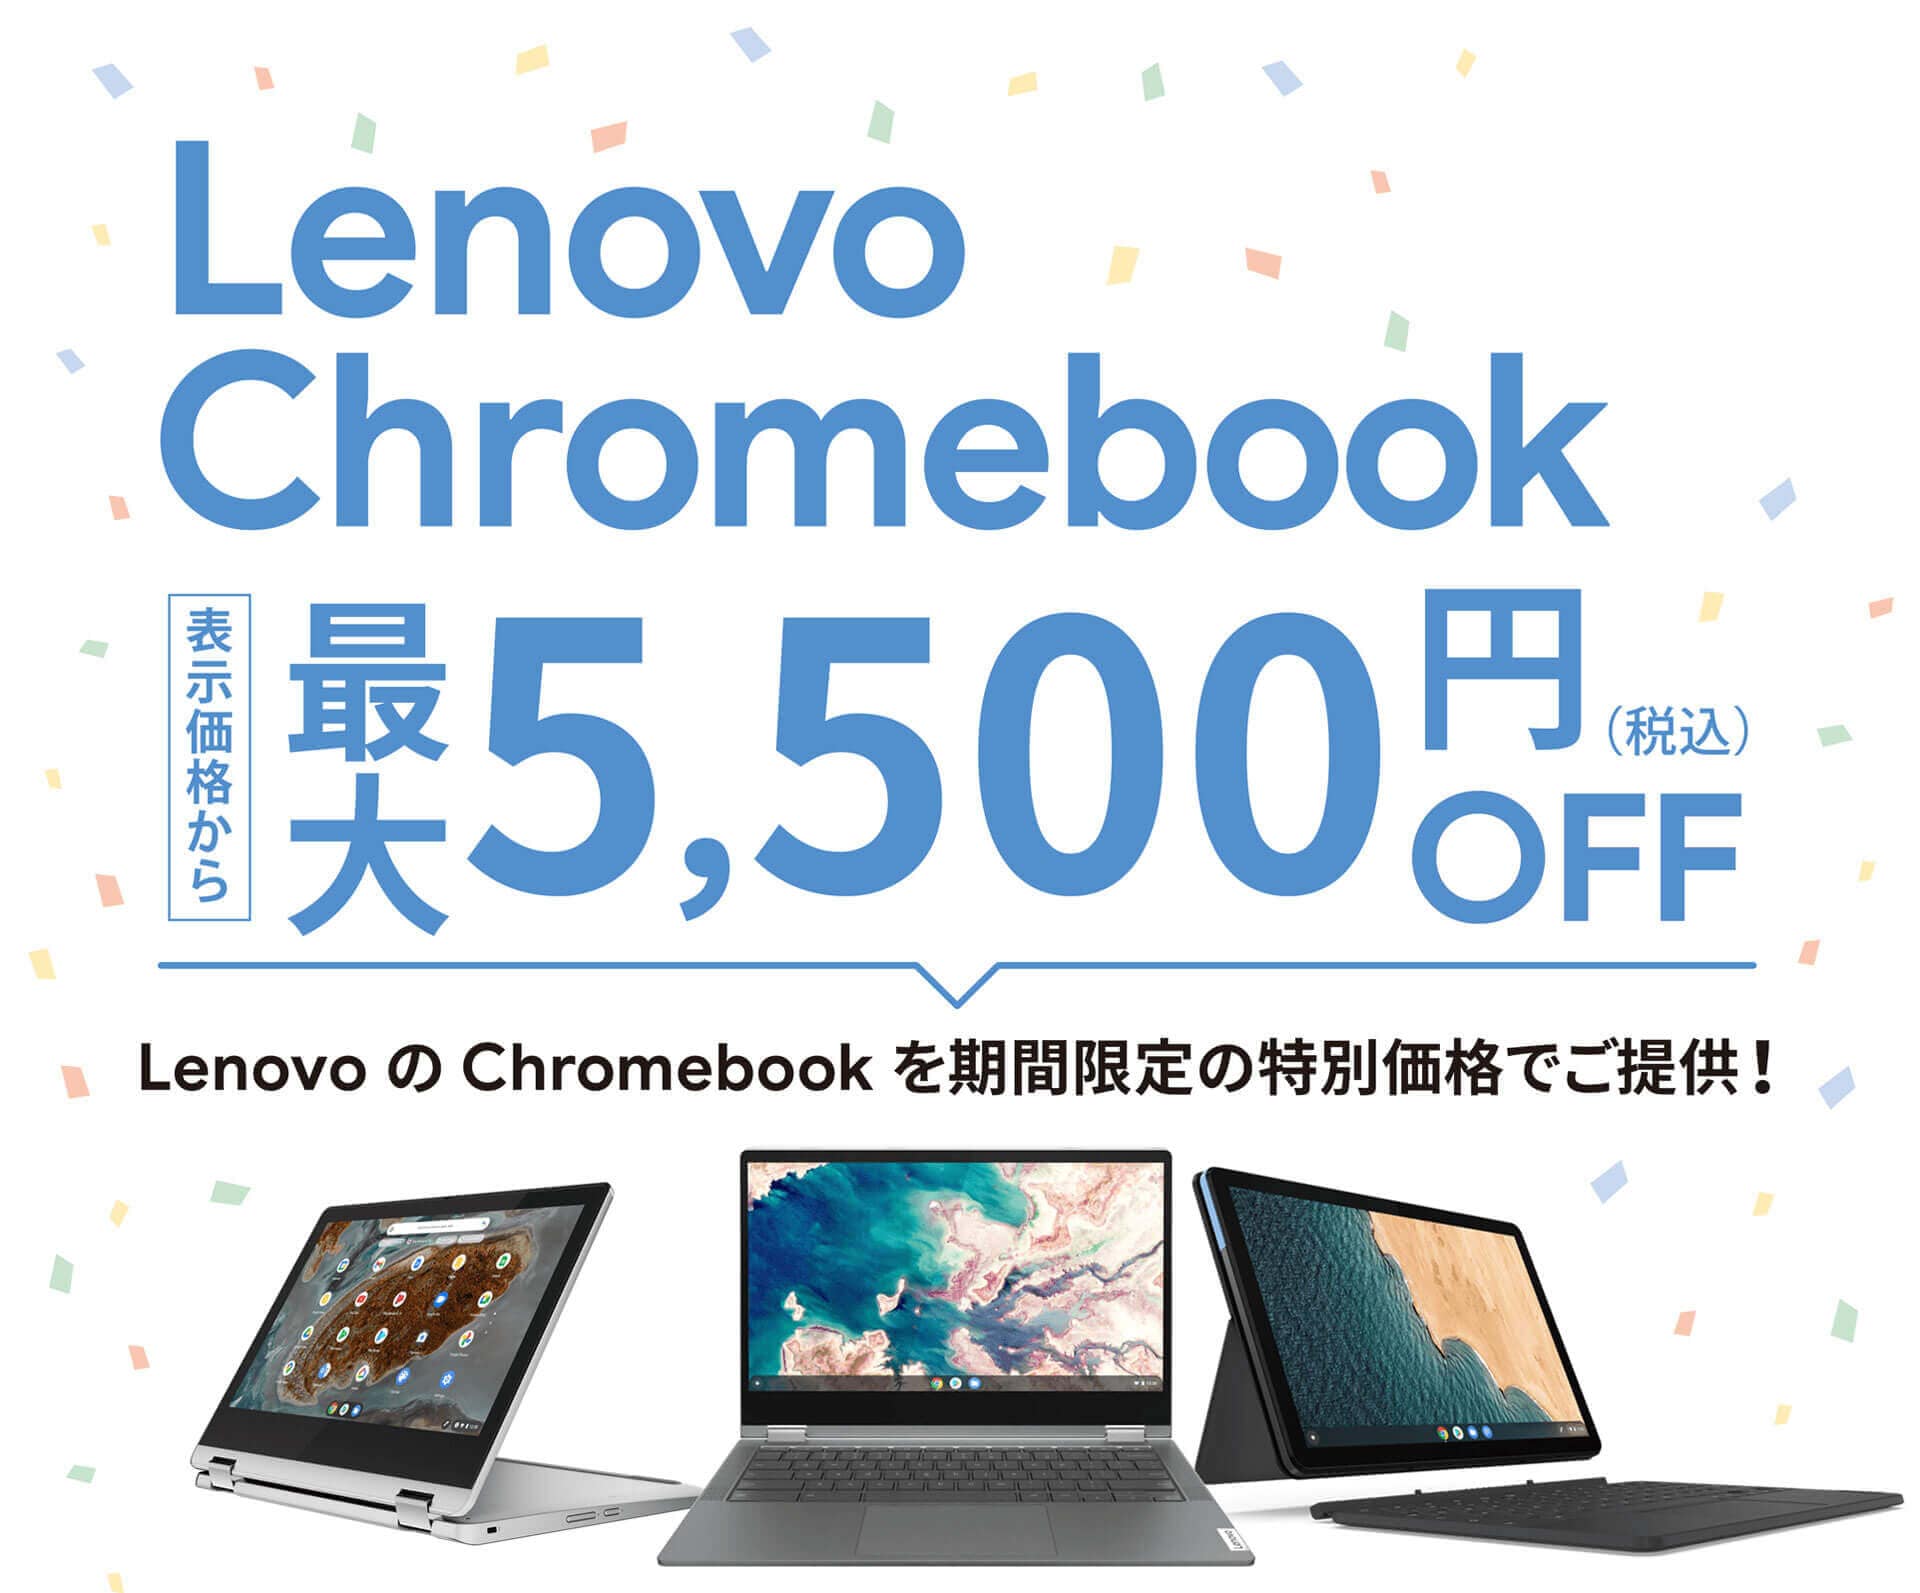  Lenovo Chromebook が、今だけ最大 5,500 円 OFFの特別キャンペーン